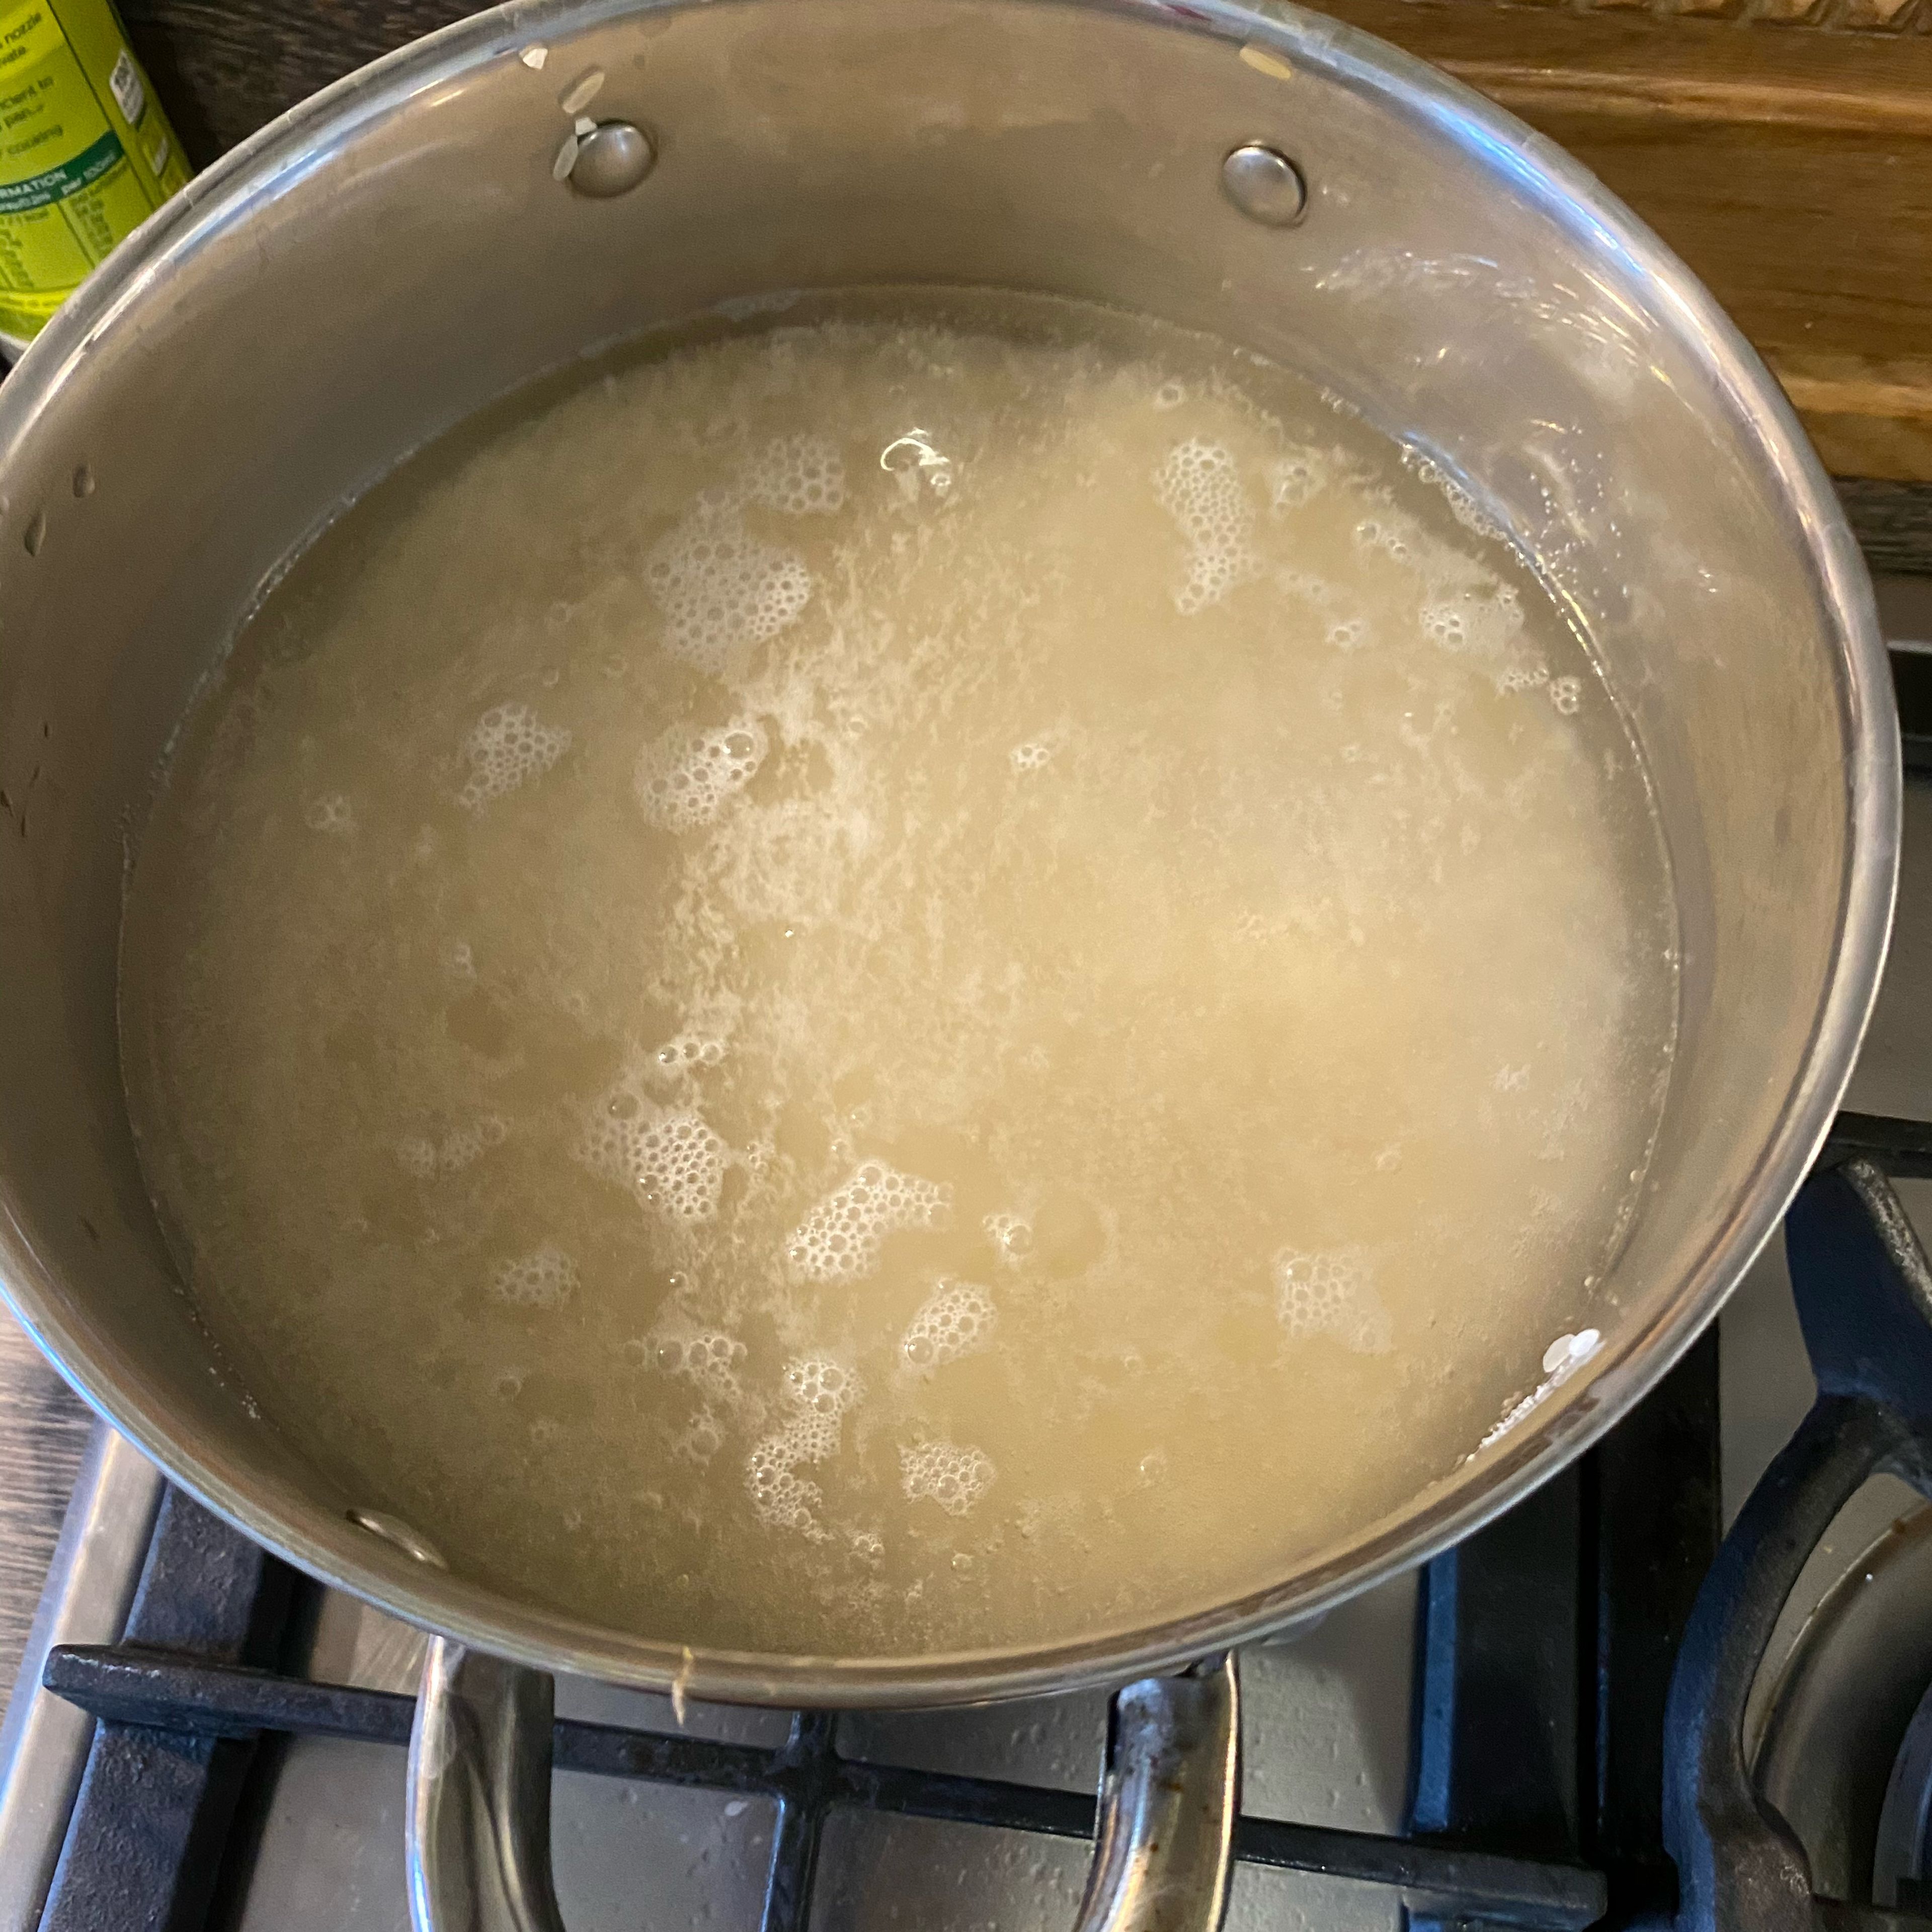 Je nach Bedarf. Den Reis gründlich waschen und kochen. Am Ende das Reis mit der Soße auf ein Teller servieren. Dazu passt auch Natur Joghurt super. Guten Appetit 